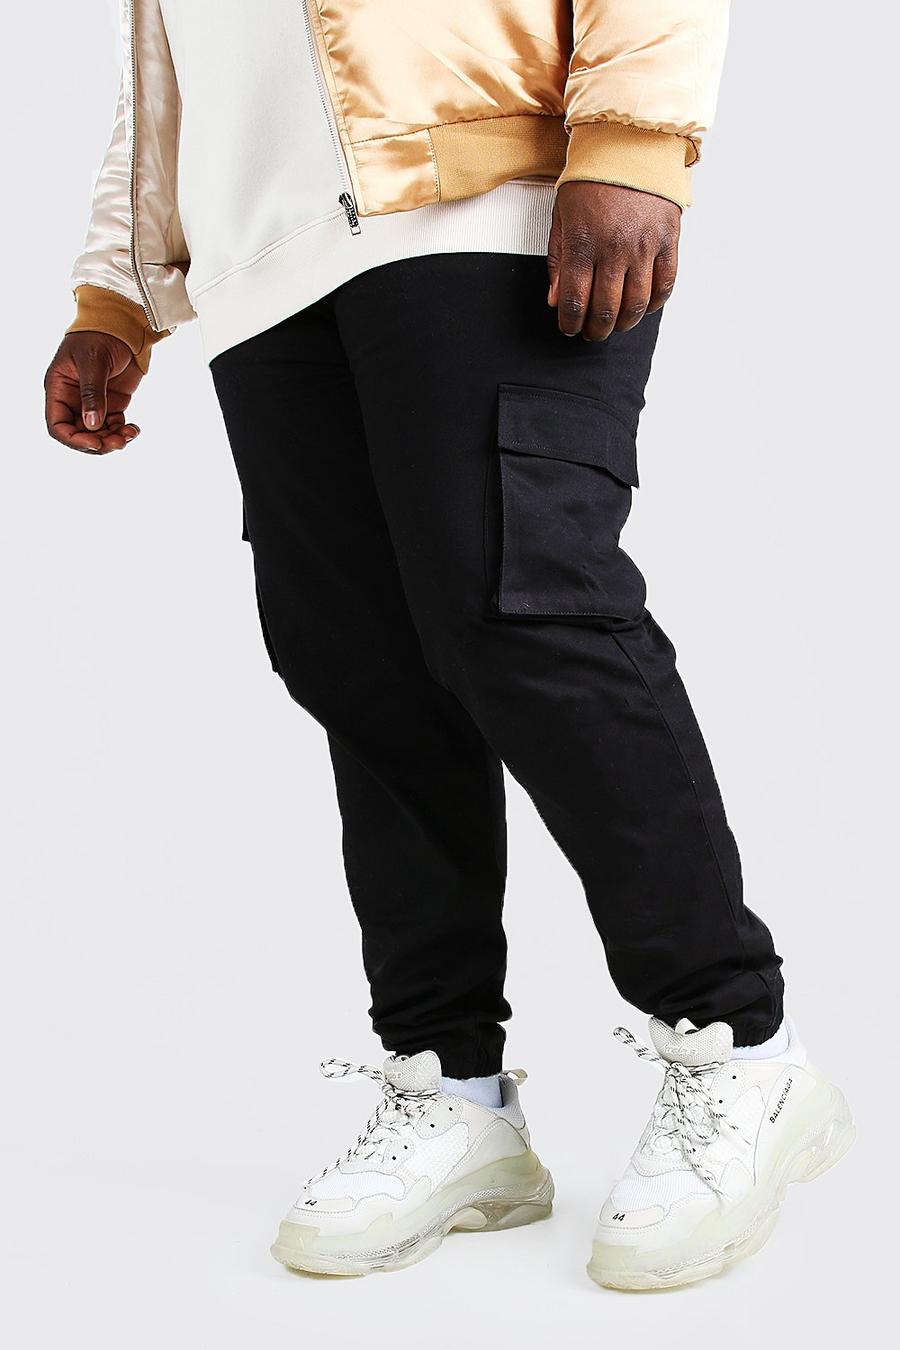 שחור negro מכנסי ריצה דגמ'ח בסגנון שימושי לגברים גדולים וגבוהים